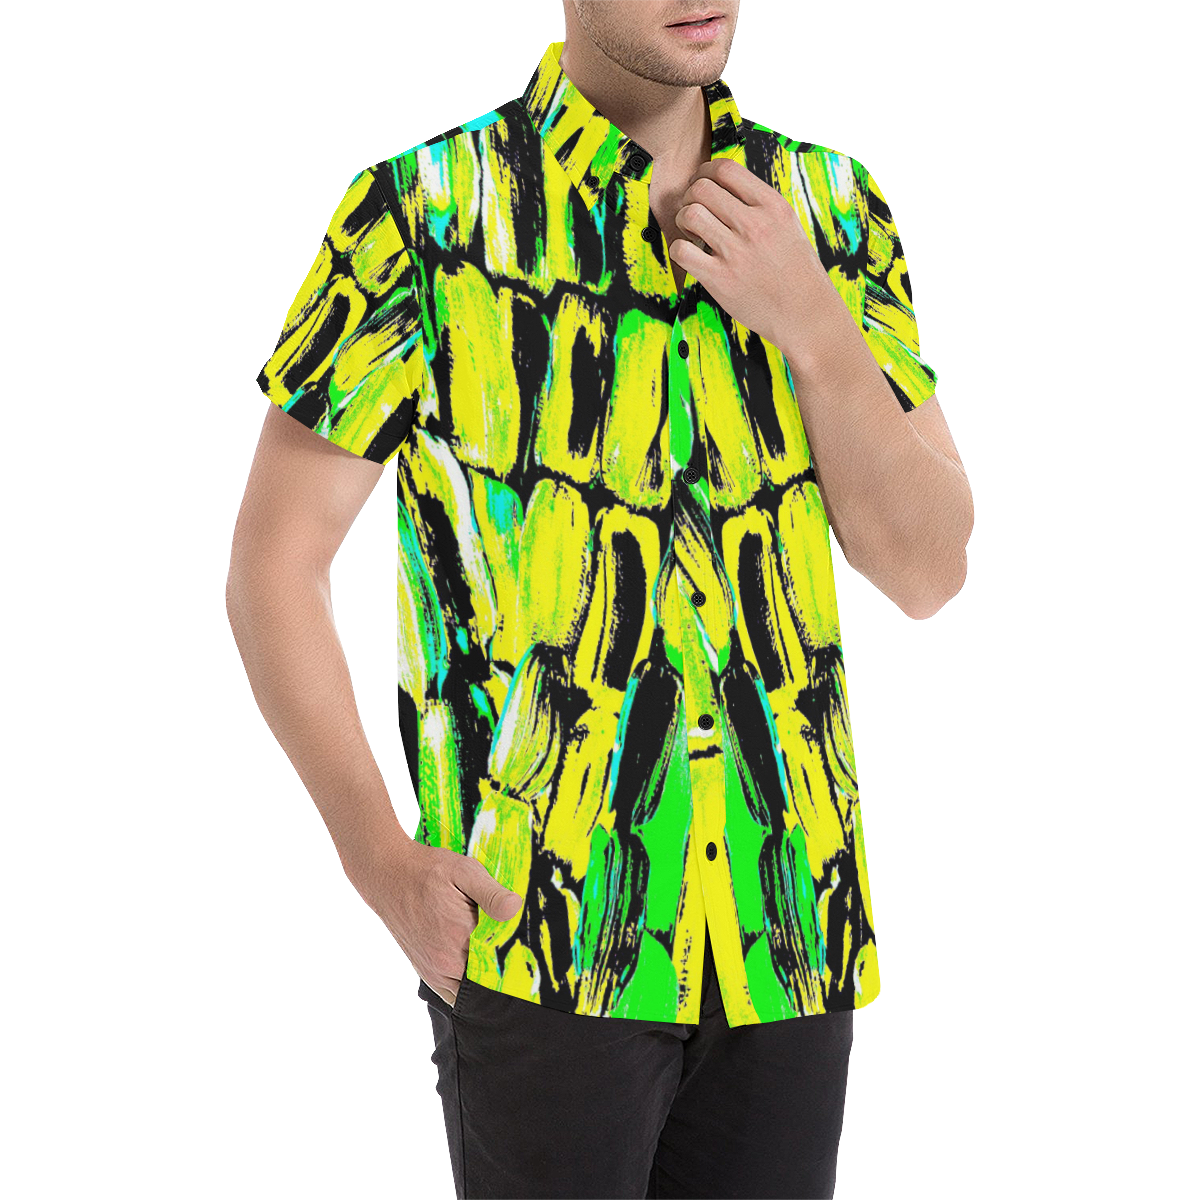 Jamaica Men's All Over Print Short Sleeve Shirt (Model T53)